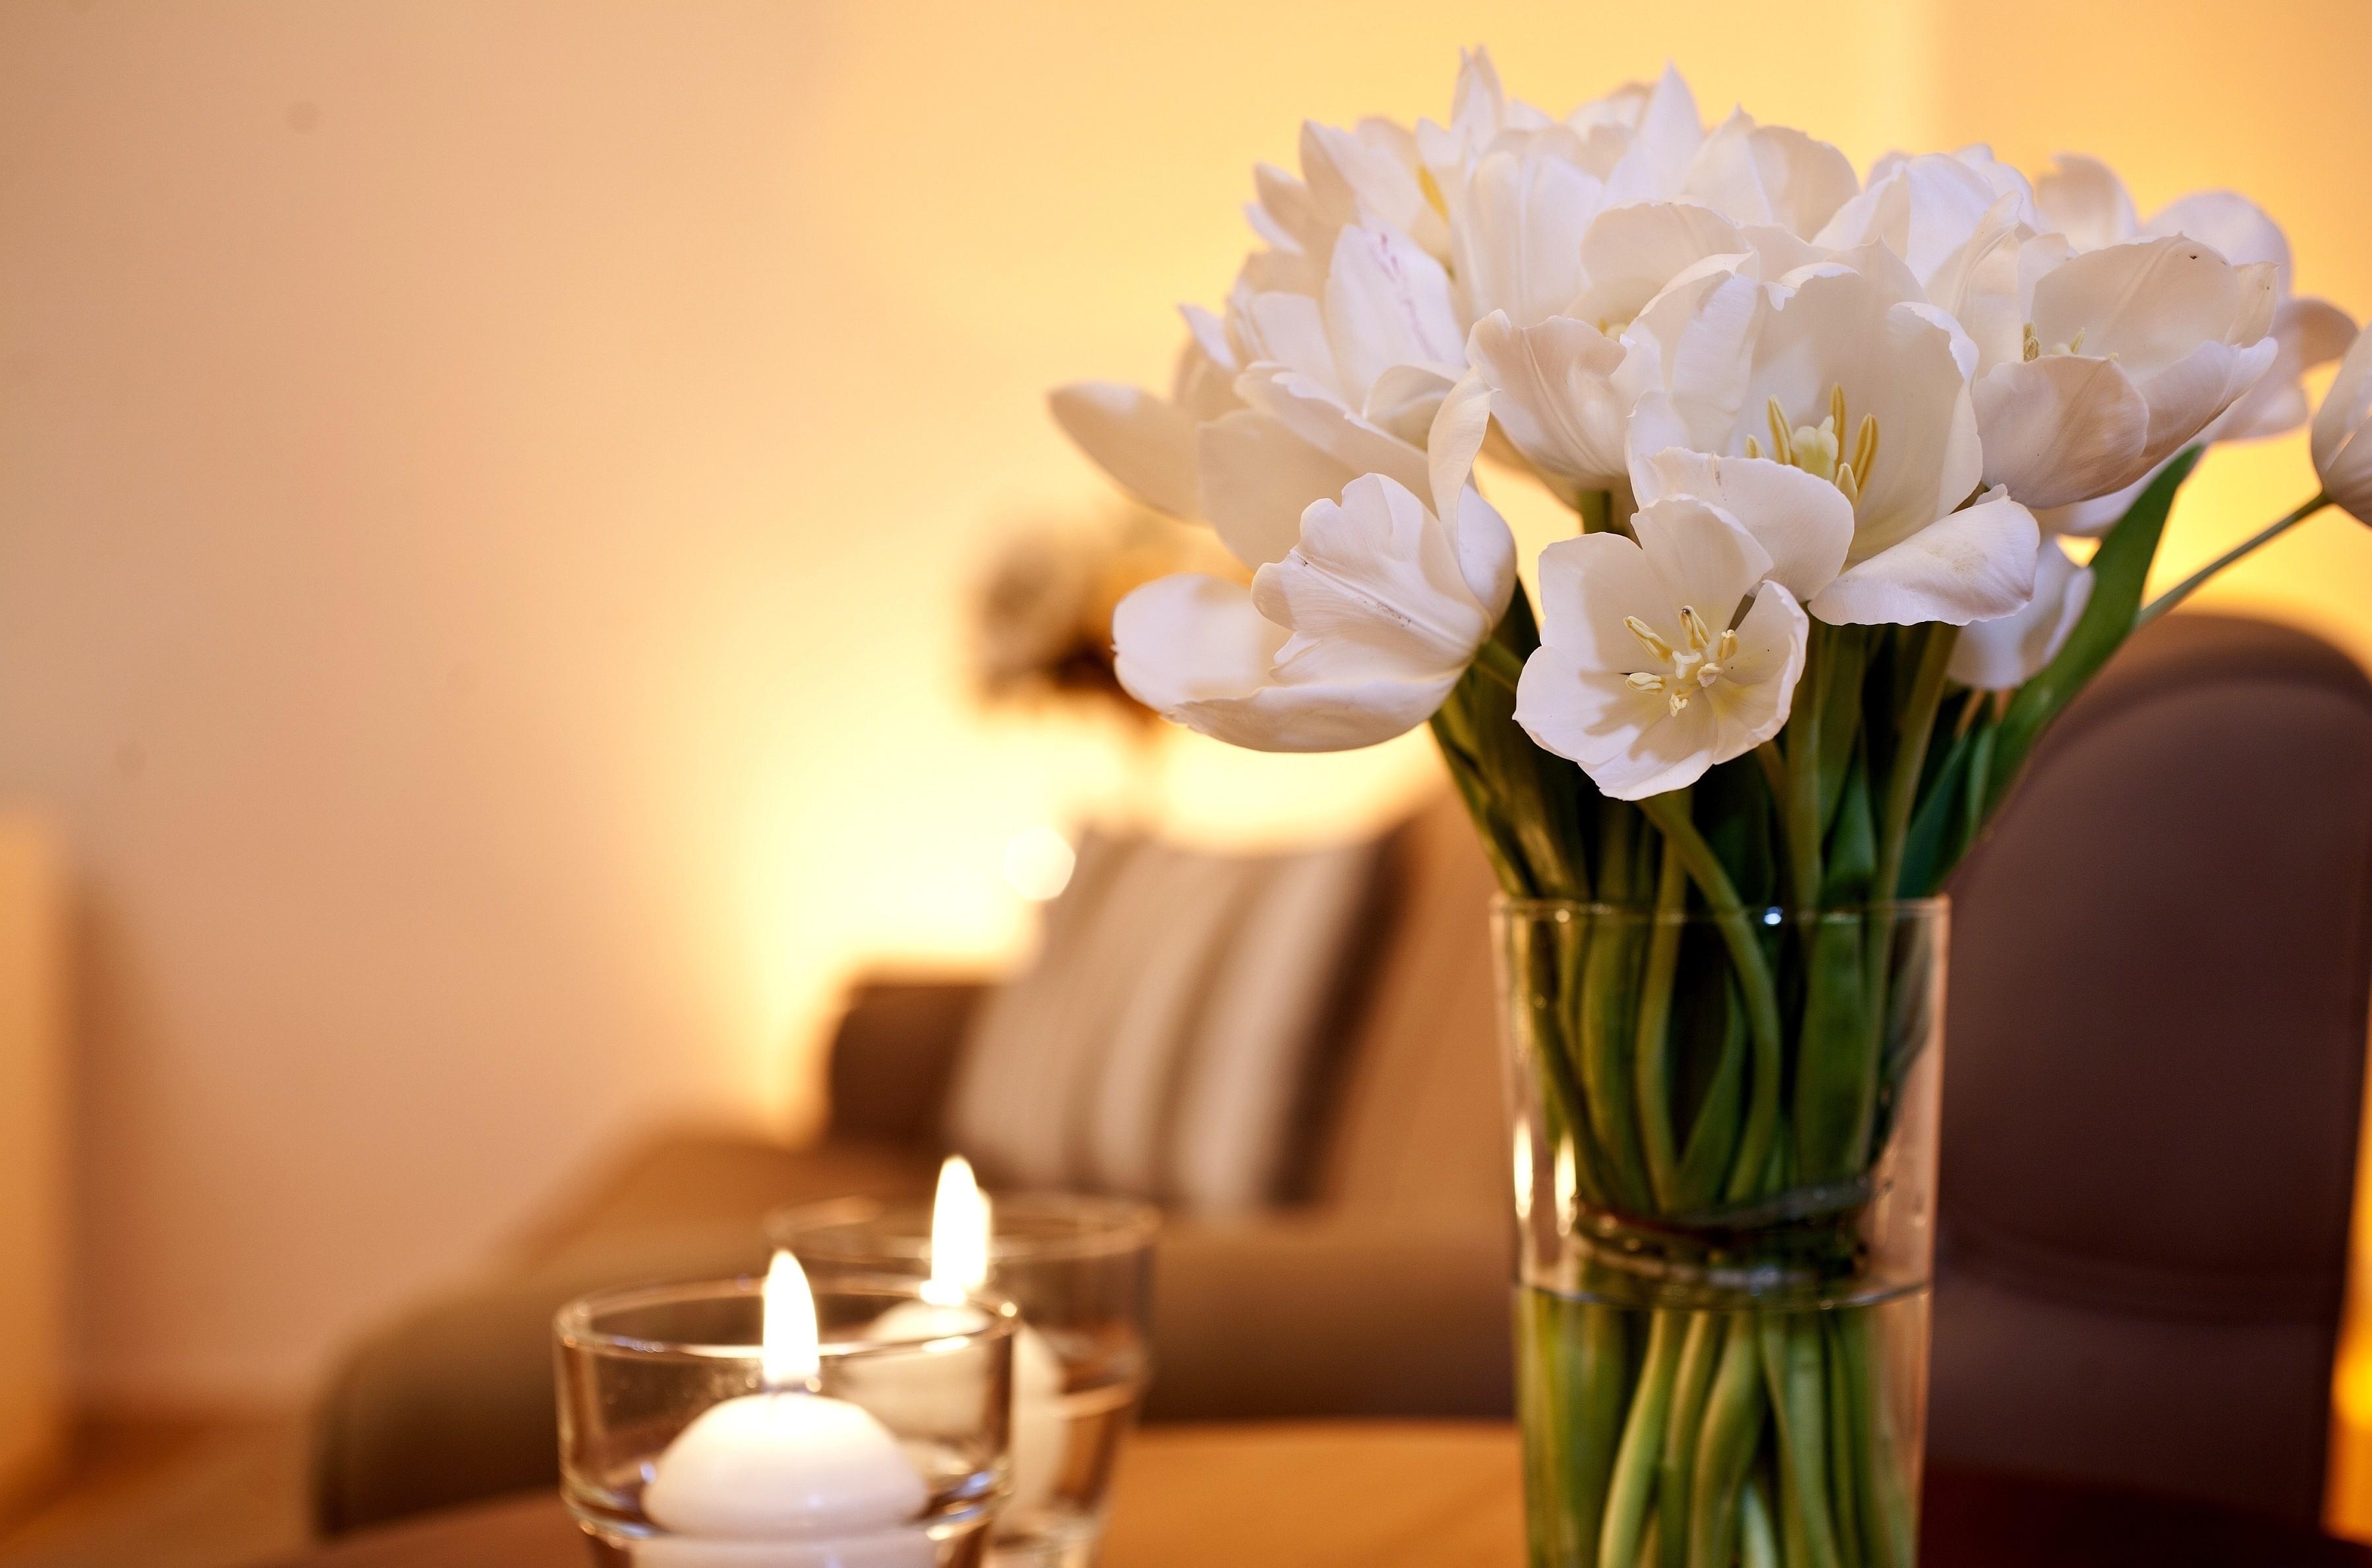 romance, candles, flowers, tulips, bouquet, vase